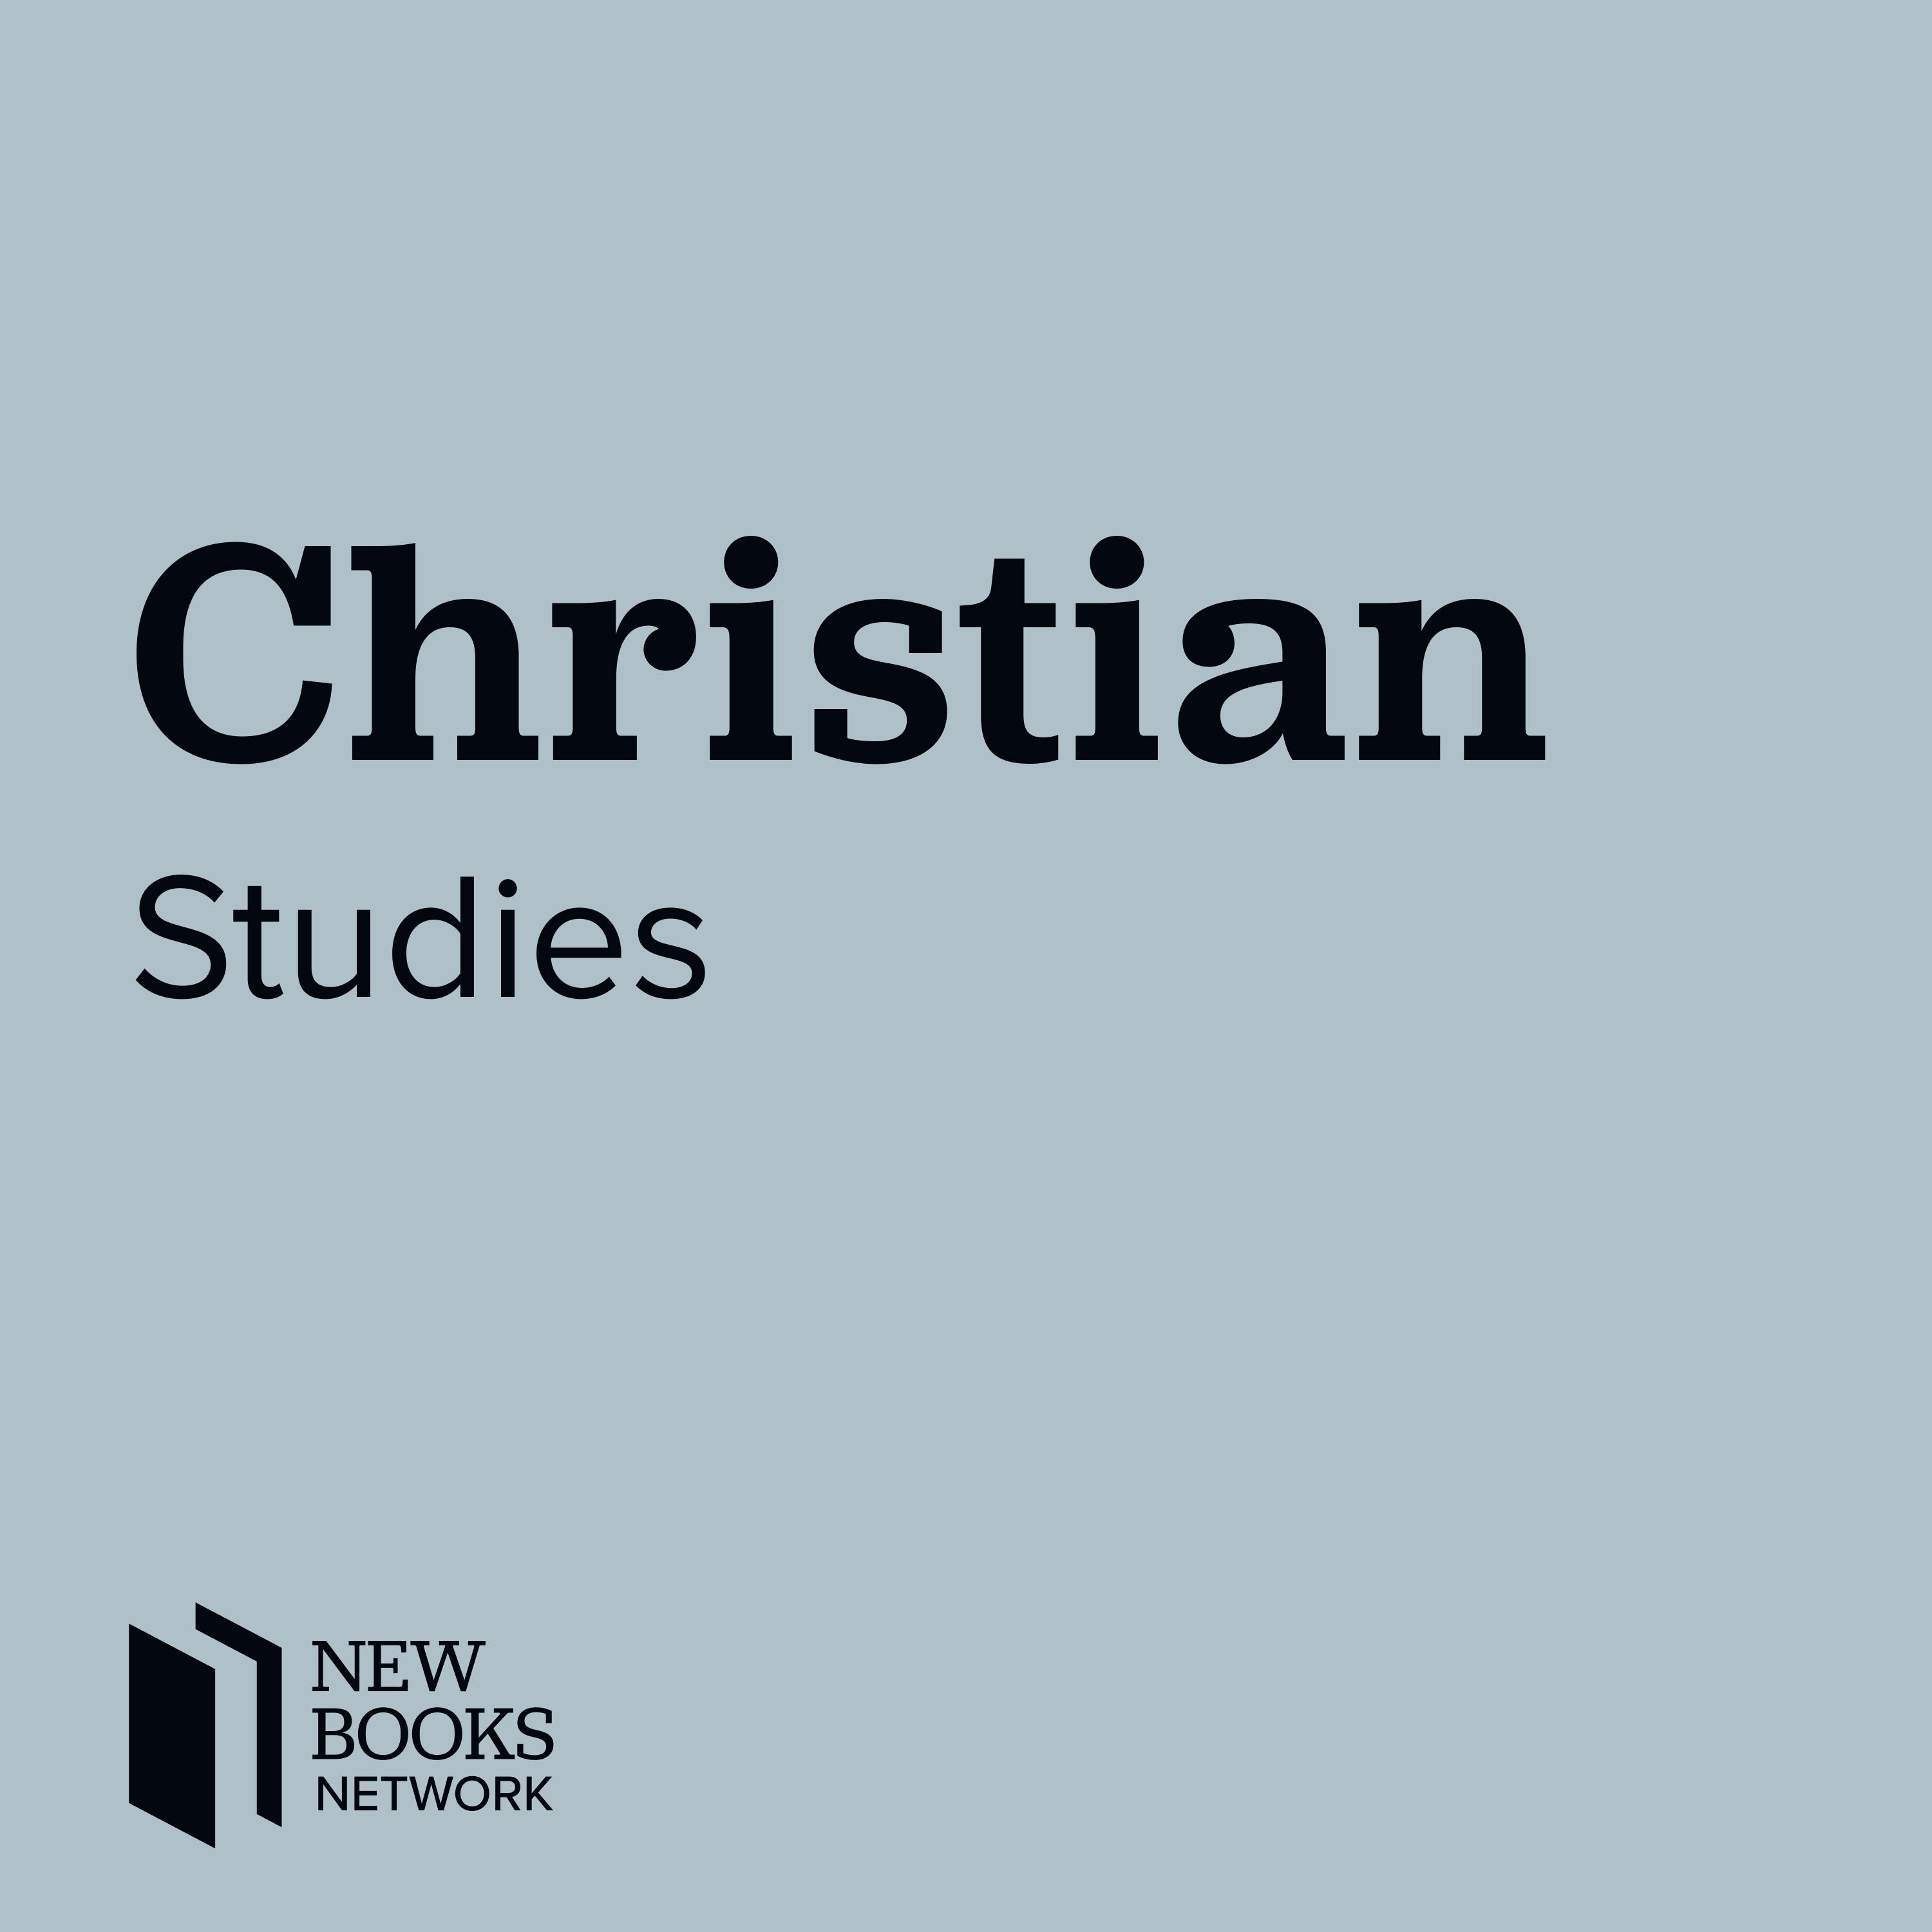 New Books in Christian Studies